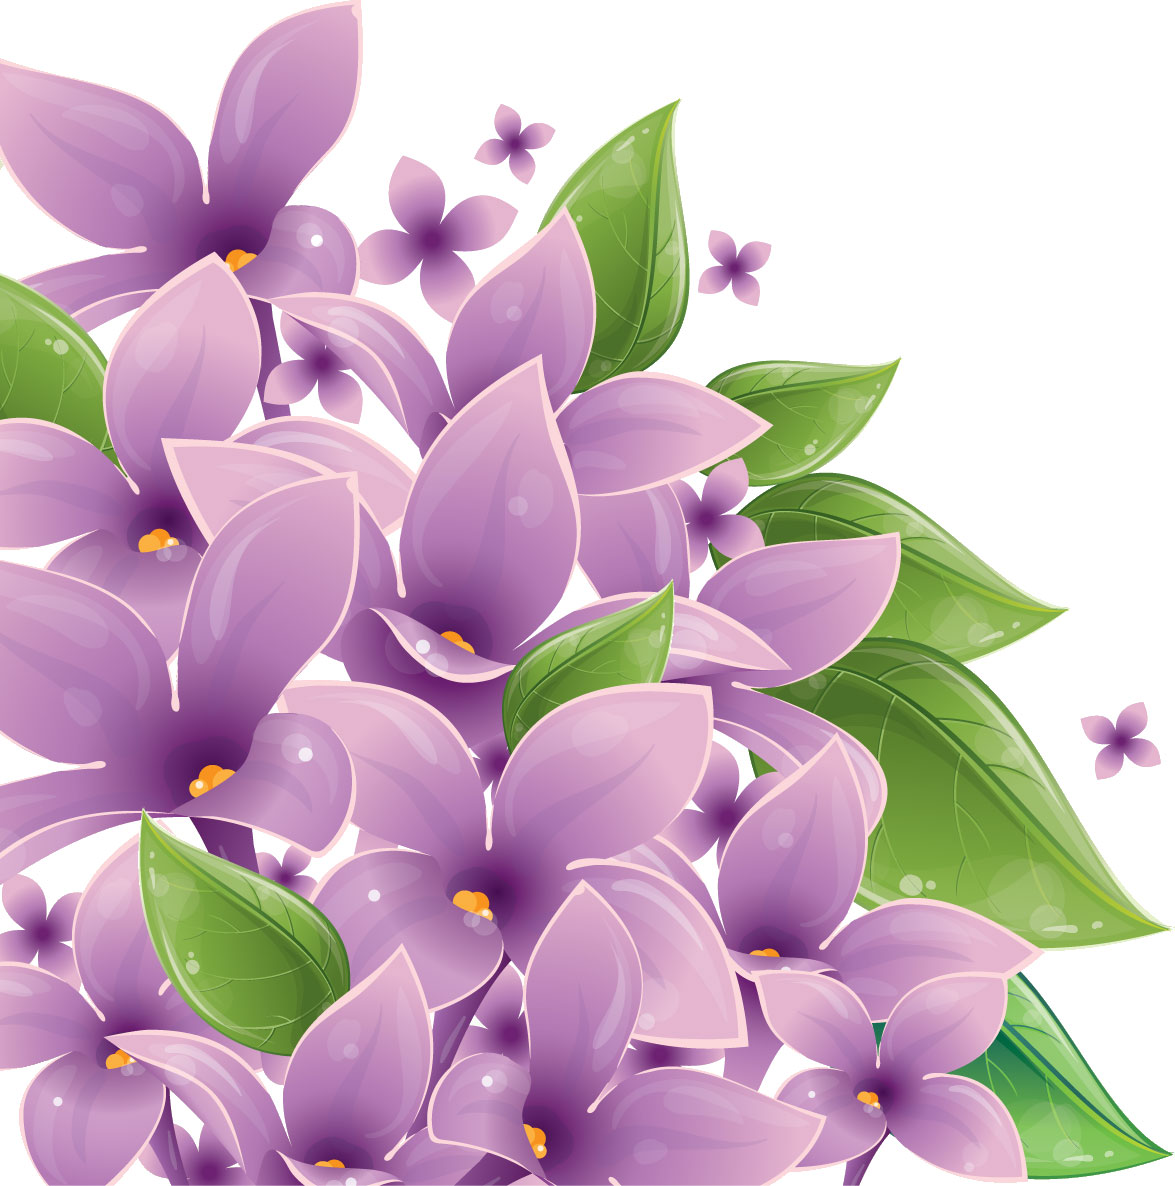 紫色の花のイラスト フリー素材 No 361 紫 葉